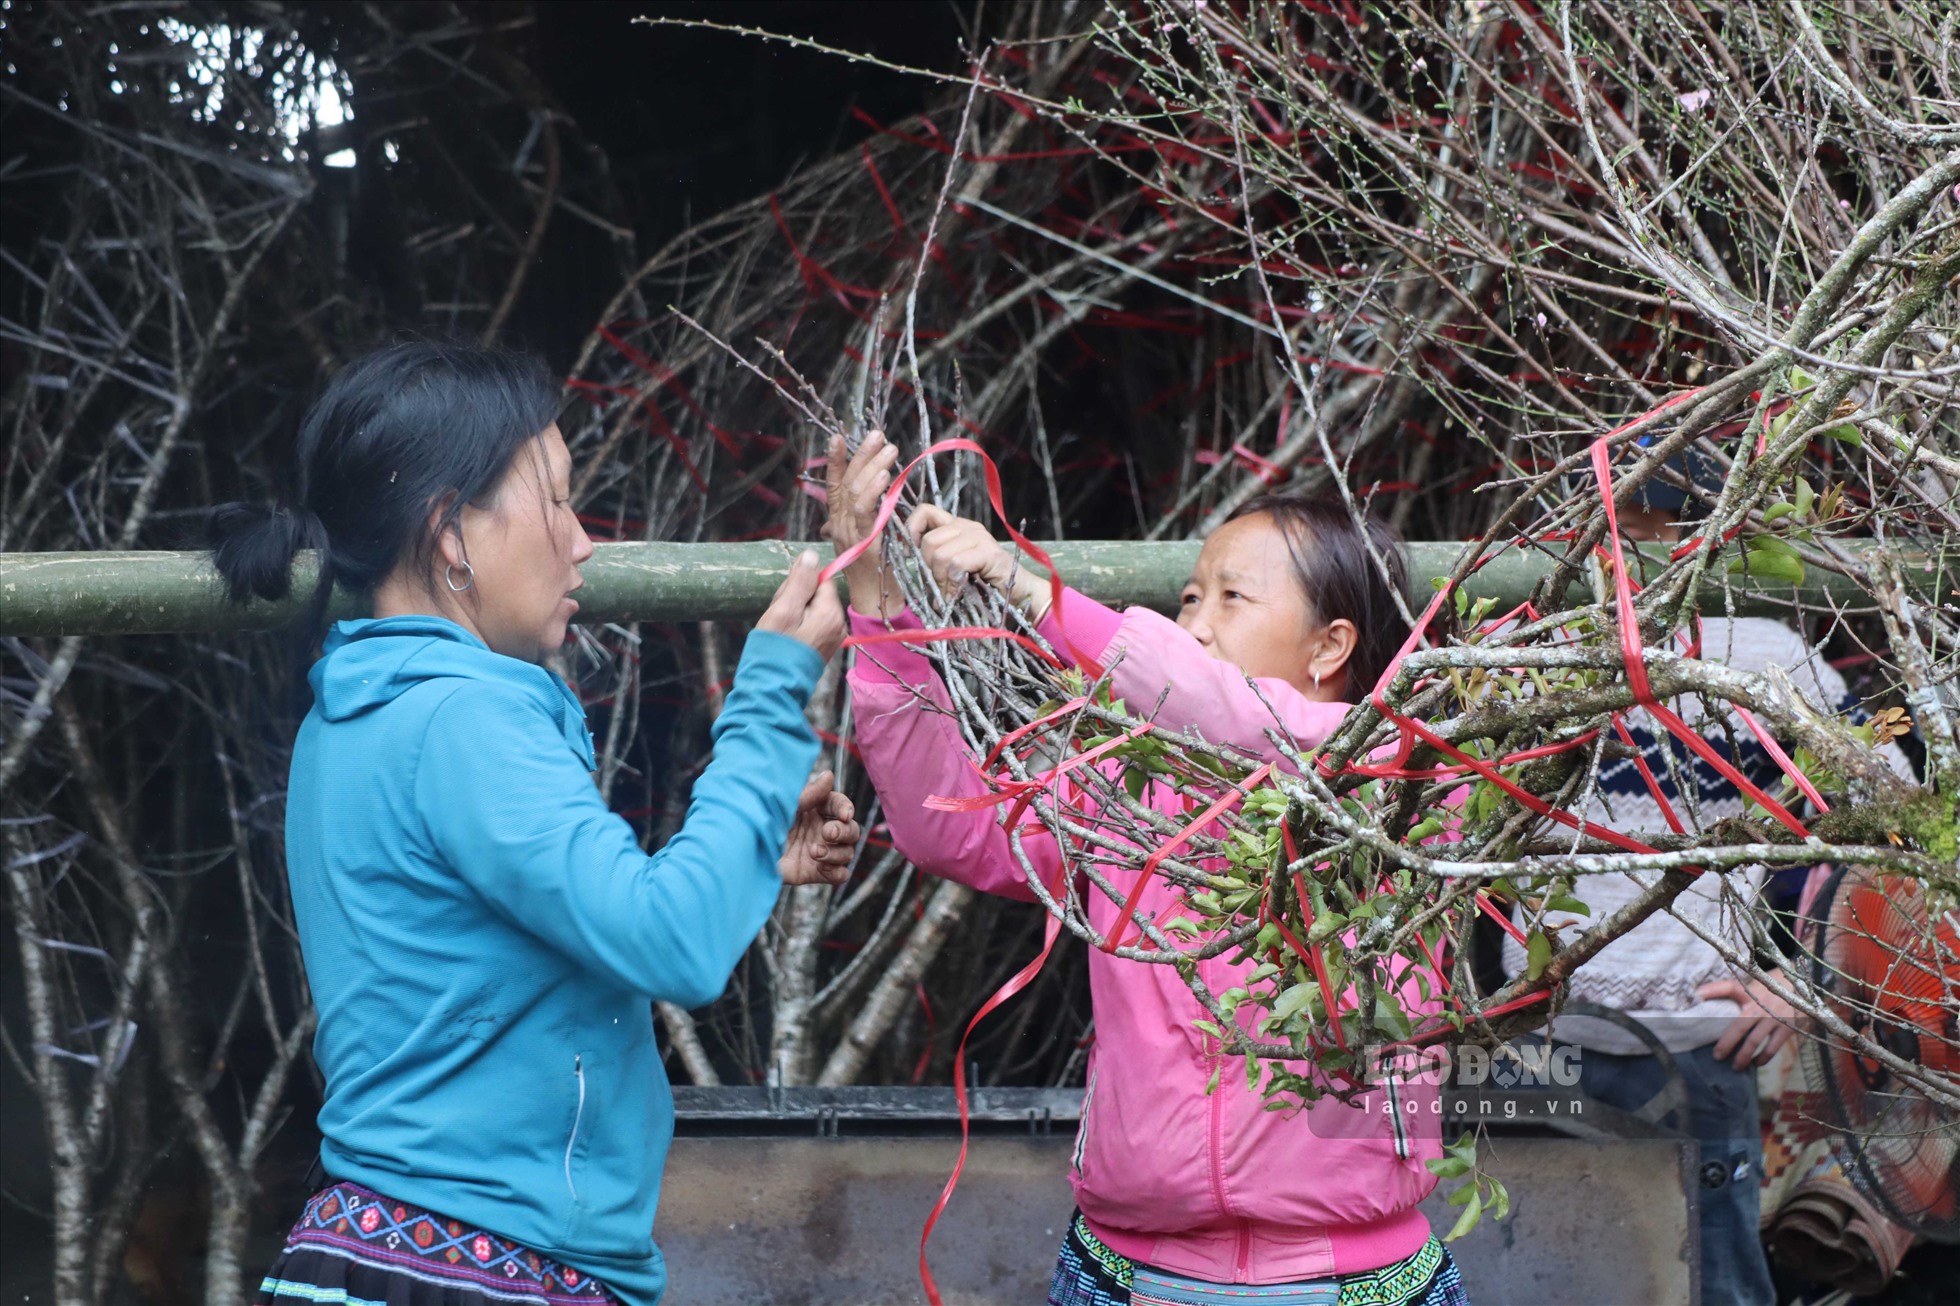 Không chỉ tô thêm sắc cho mùa xuân, cây đào cũng mang lại giá trị cao cho người nông dân huyện Vân Hồ, giúp họ có thêm thu nhập, nâng cao chất lượng cuộc sống, đặc biệt là mang đến cái Tết ấm no, sum vầy cho bà con đồng bào nơi đây.